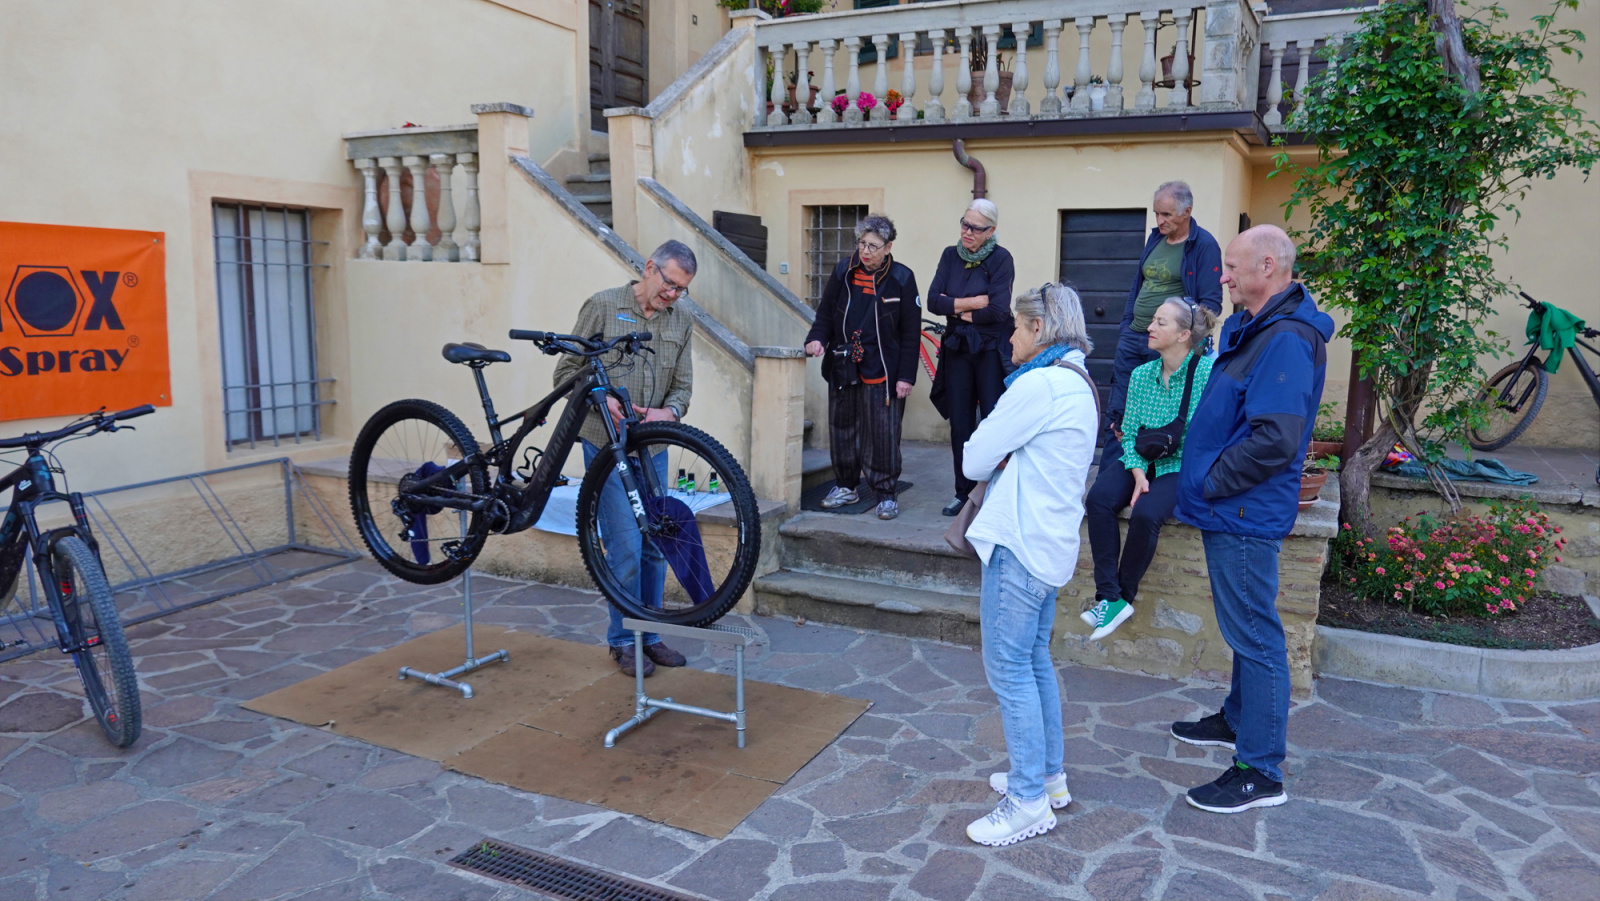 Bikeferien in der Toscana - 2023 Woche 17 - Hampi der Wiederholungstäter